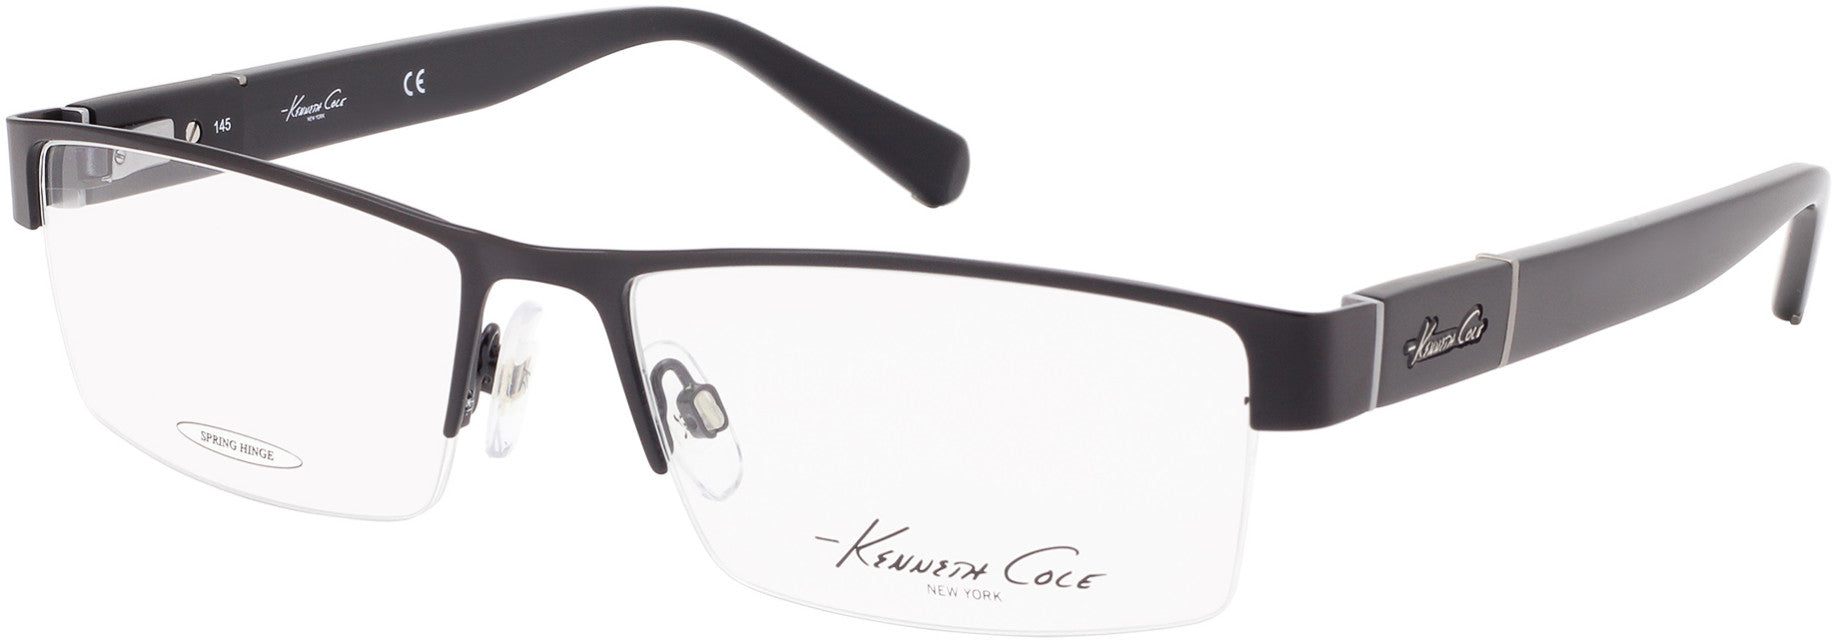 Kenneth Cole New York,Kenneth Cole Reaction KC0217 Eyeglasses 002-002 - Matte Black